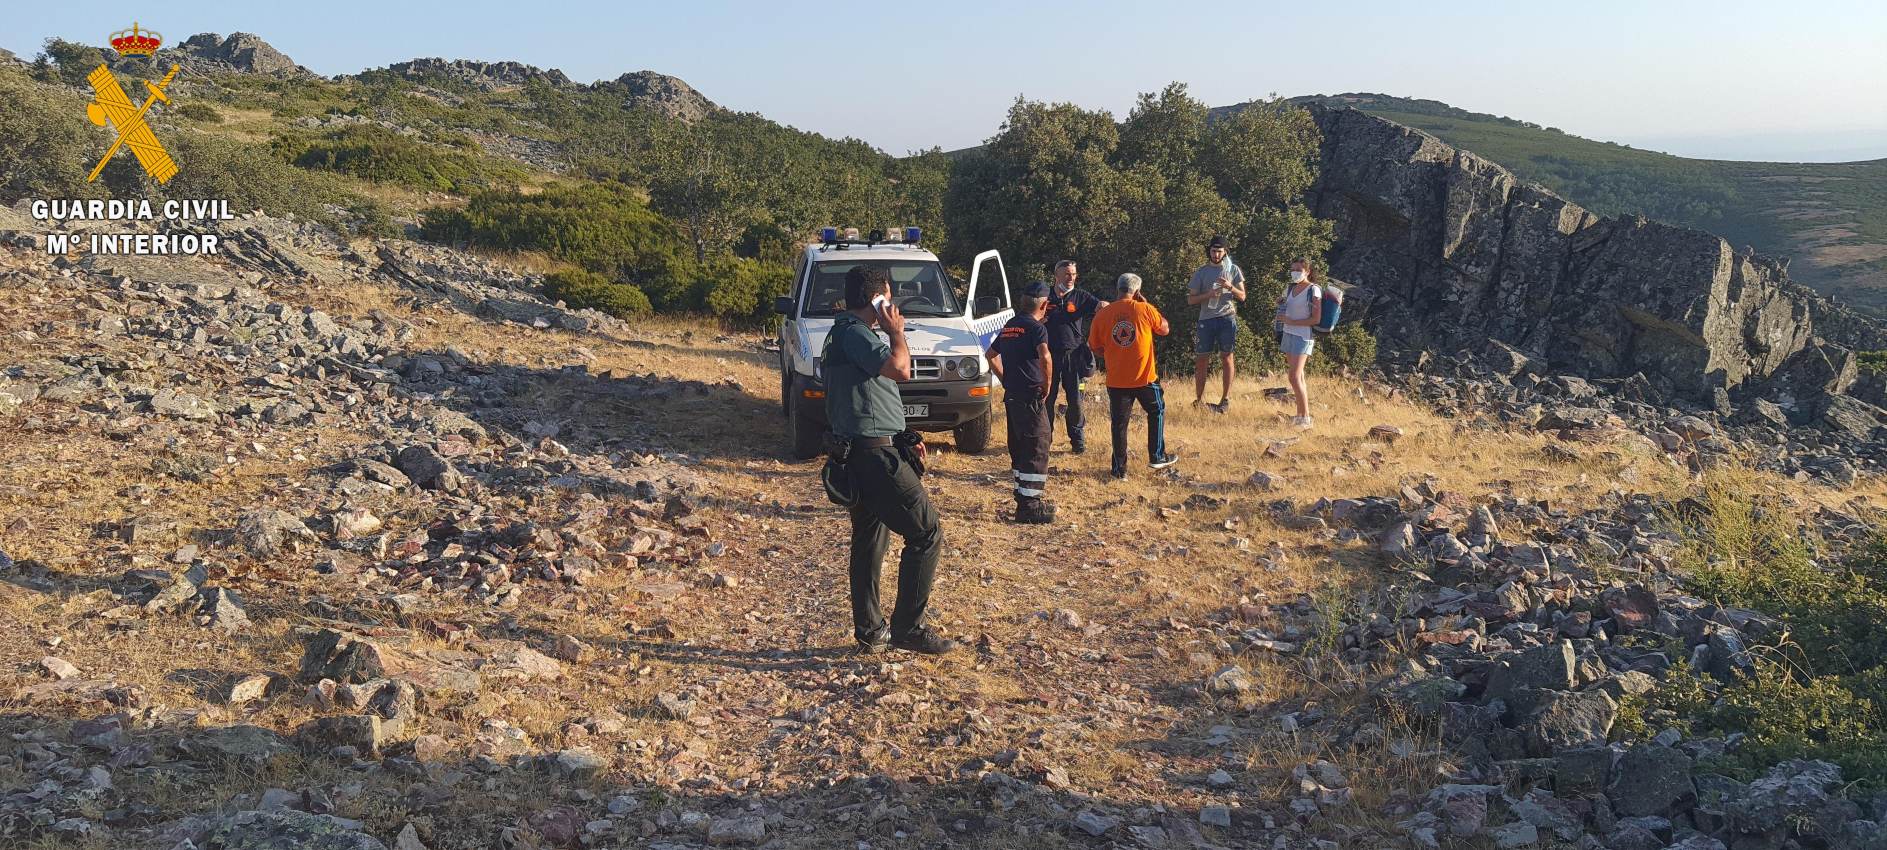 Los dos senderistas tuvieron que avisar a la Guardia Civil al encontrarse exhaustos en el monte.